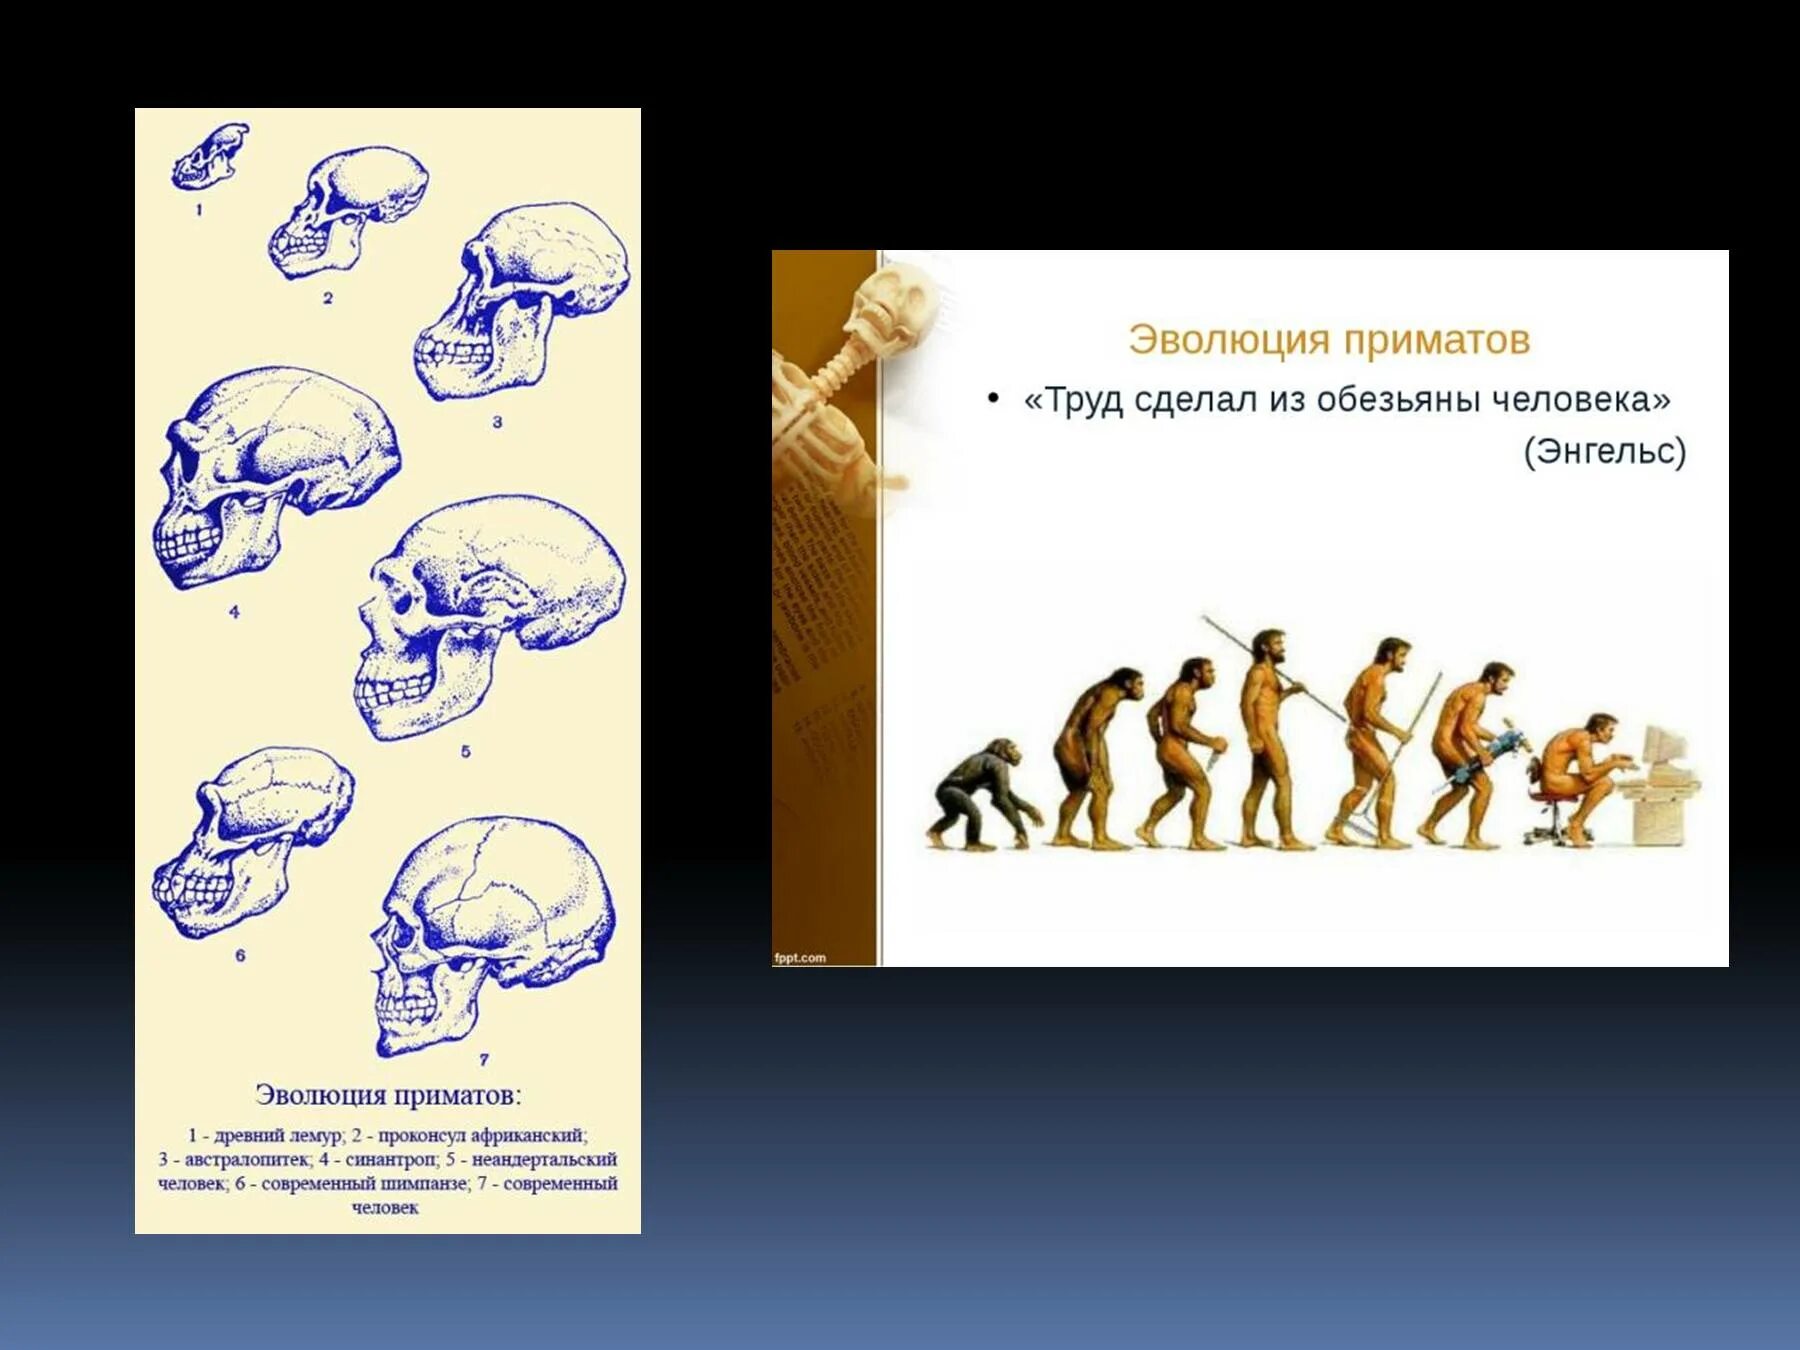 Эволюция человека до обезьяны. Эволюция приматов. Происхождение человека от обезьяны. Эволюция человека от обезьяны до человека. Процесс превращения человека в обезьяну